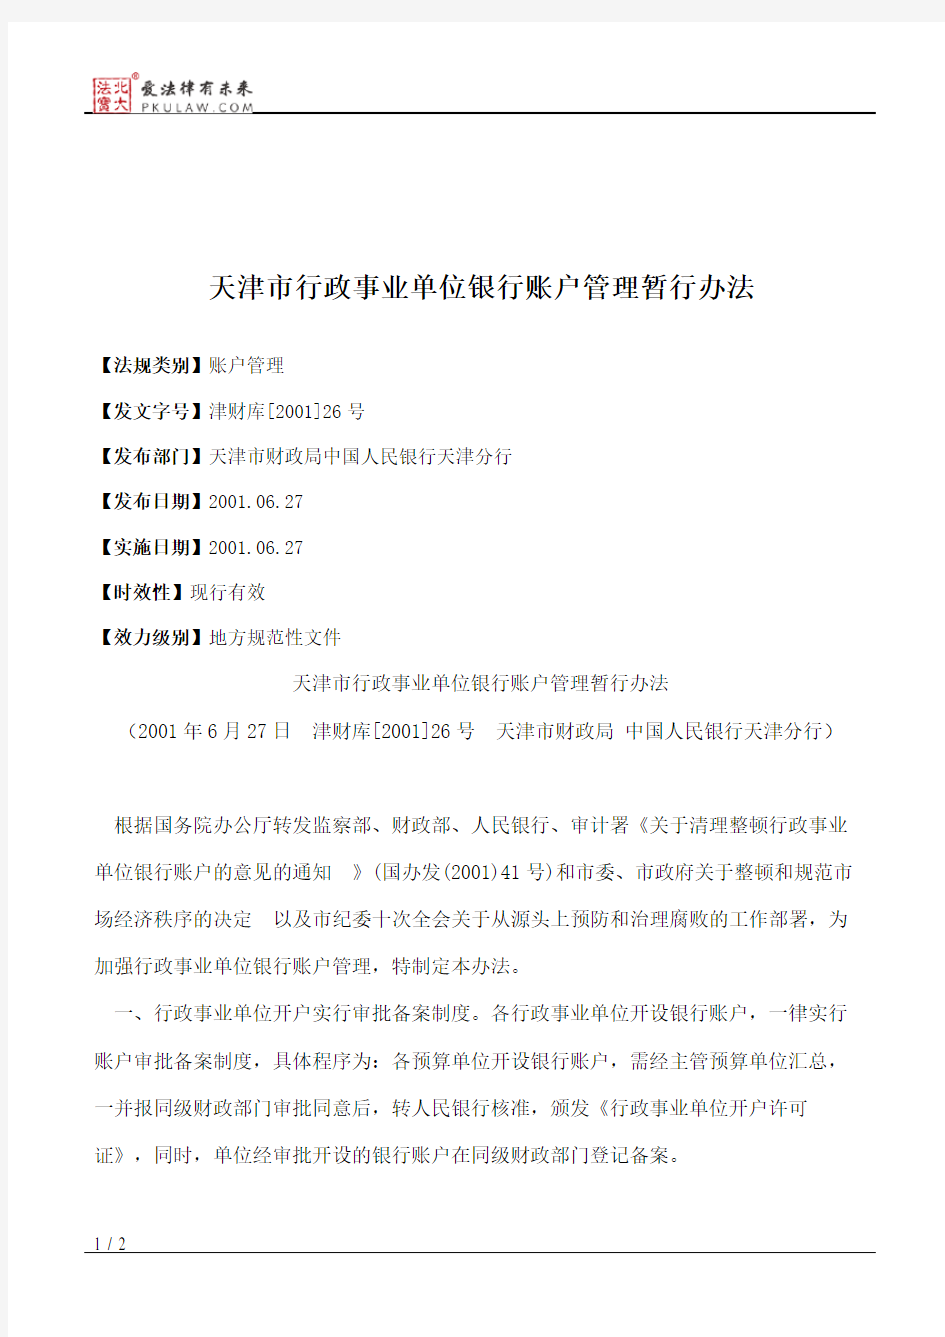 天津市行政事业单位银行账户管理暂行办法